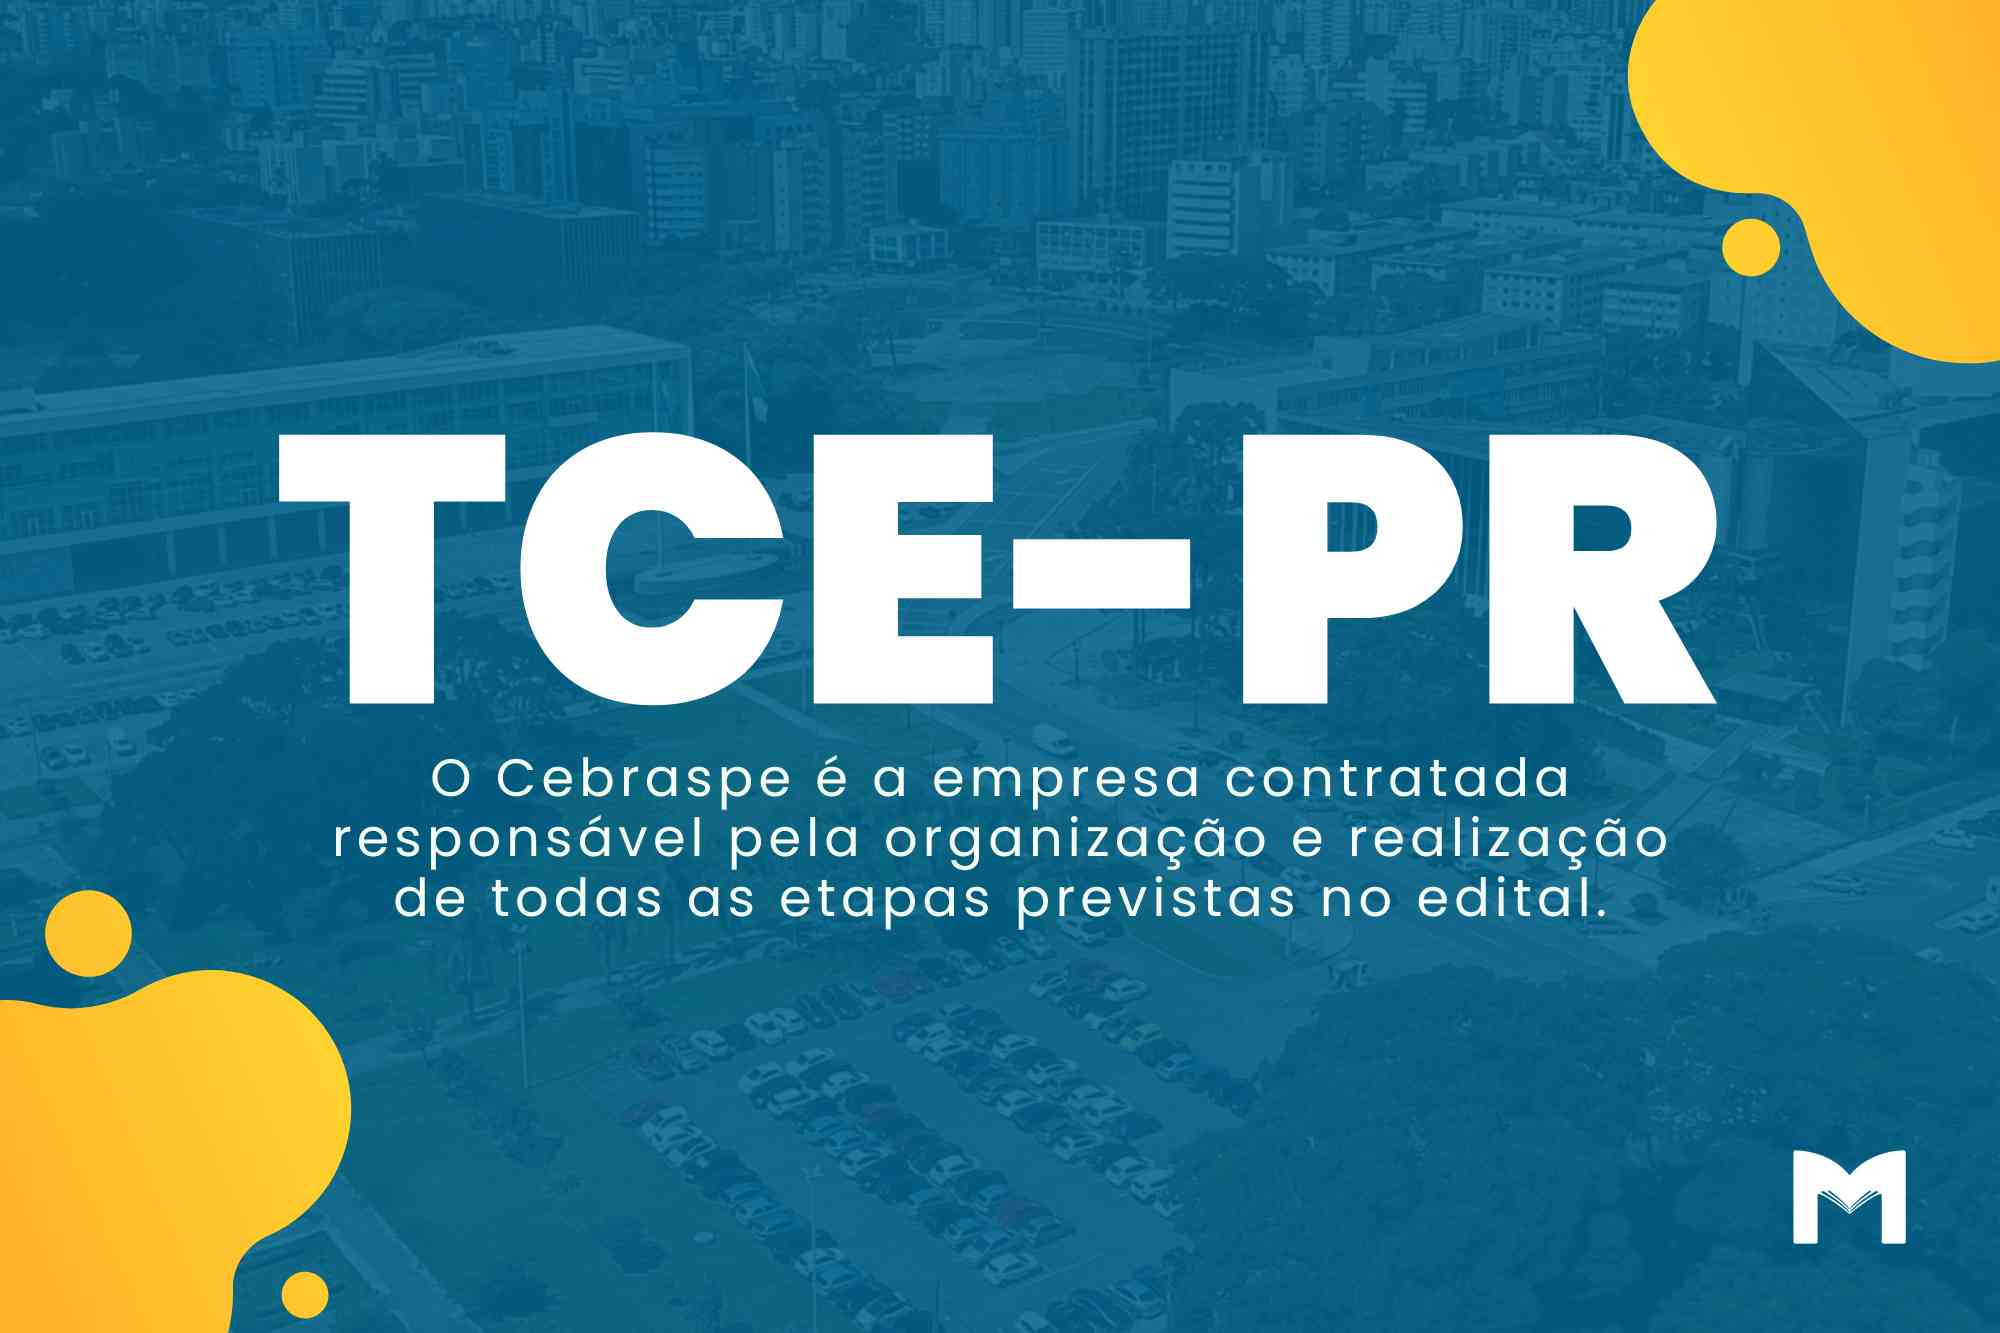 Concurso TCE PR: Edital com Salários Iniciais de R$ 22 Mil!